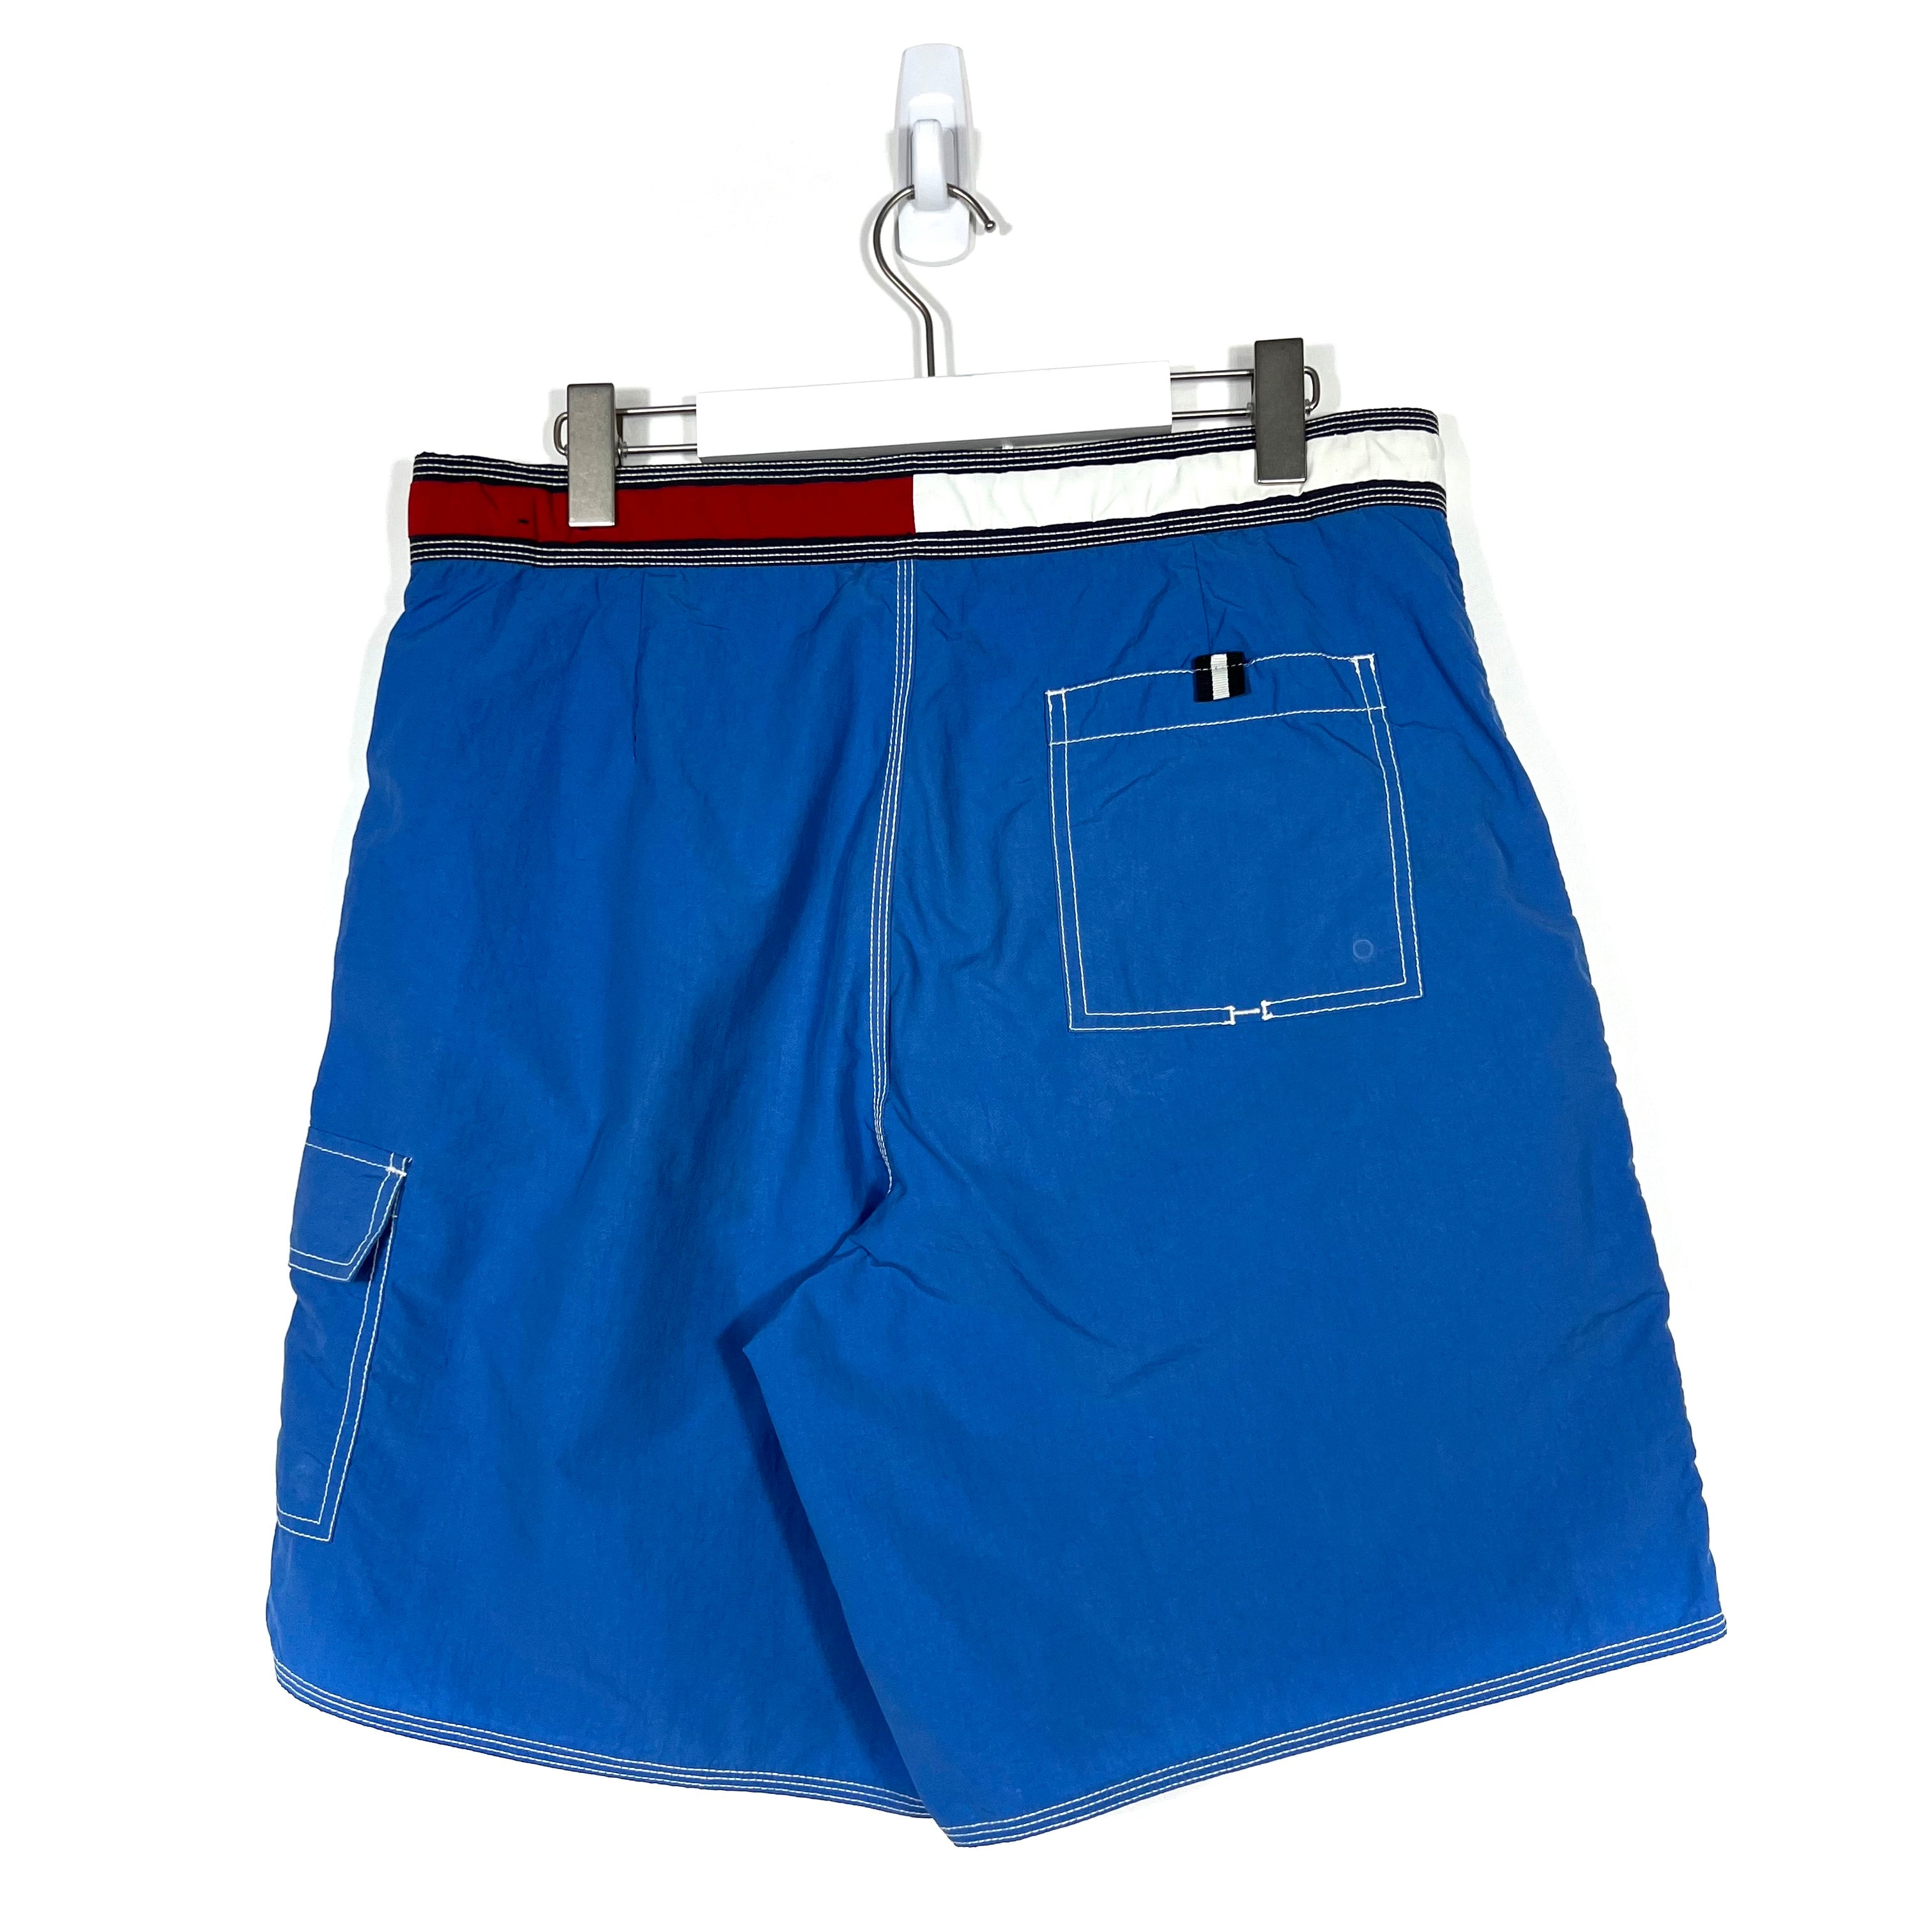 Tommy Hilfiger Board Shorts - Men's Large